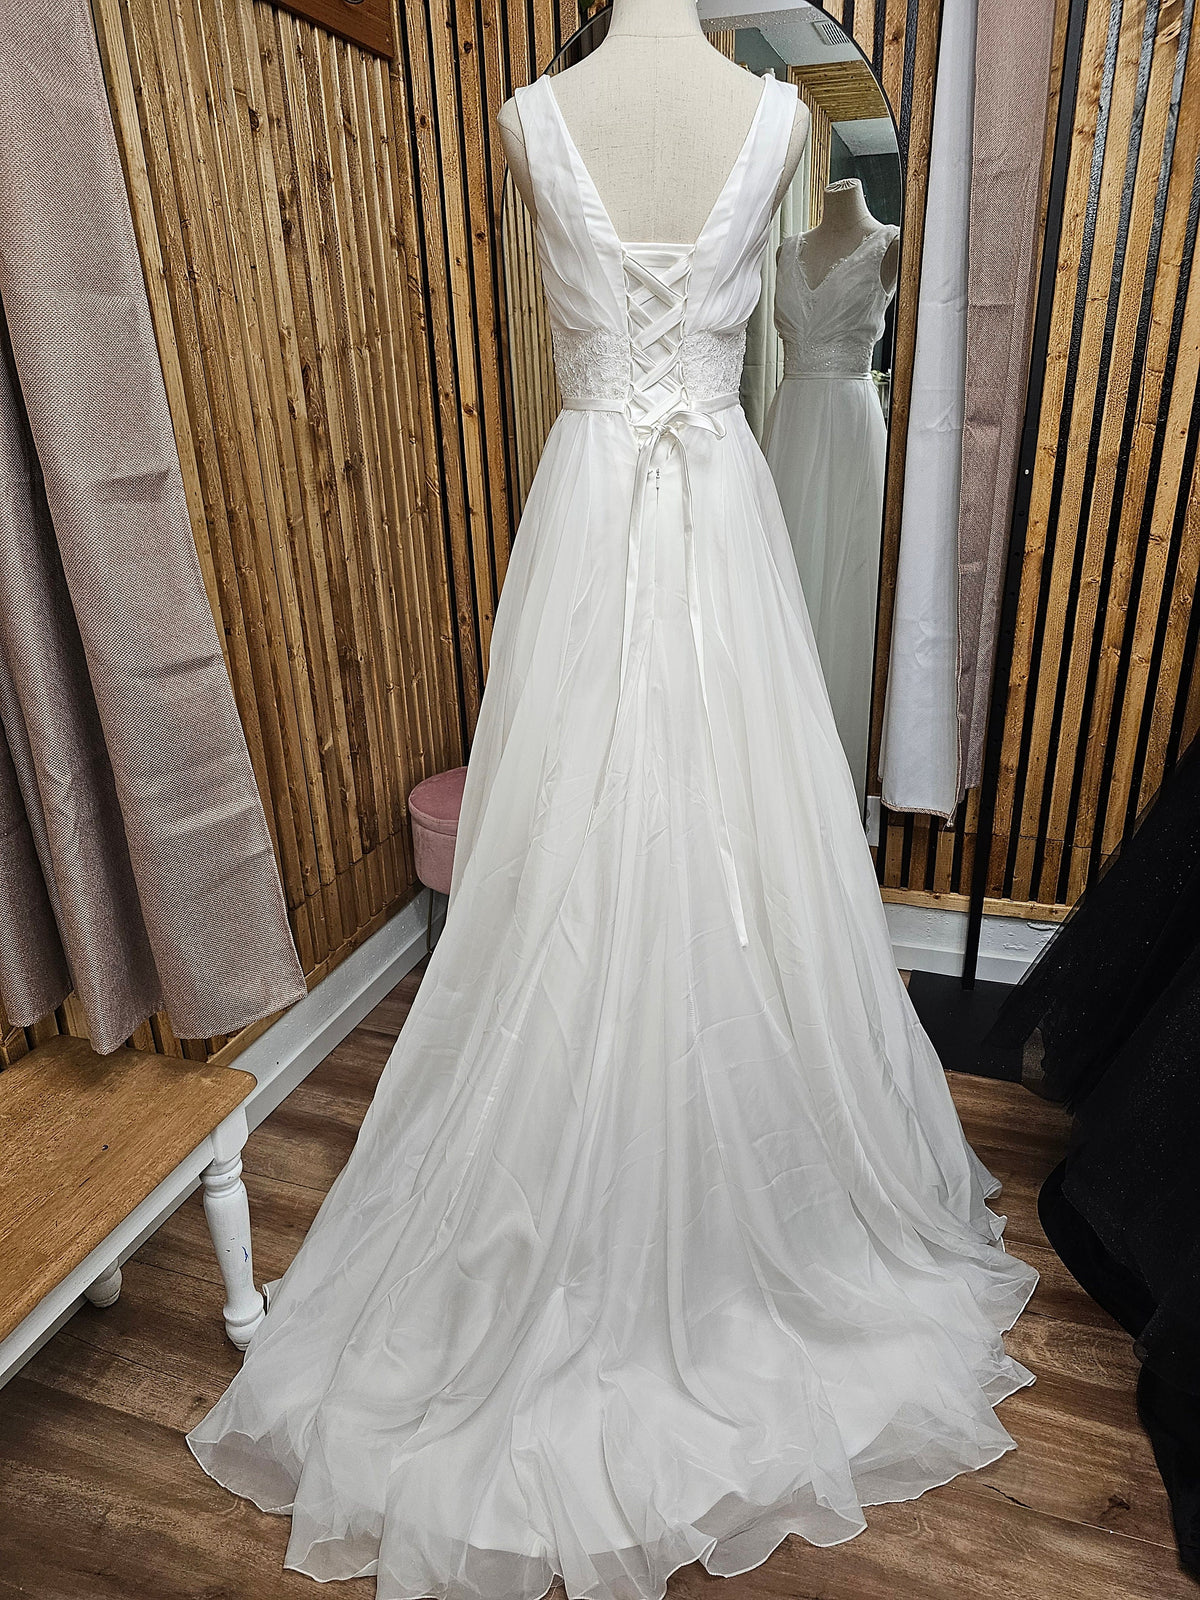 Classic Design V Neck Sleeveless Aline Wedding Dress Bridal Gown Short Train Elegant Style Open Back